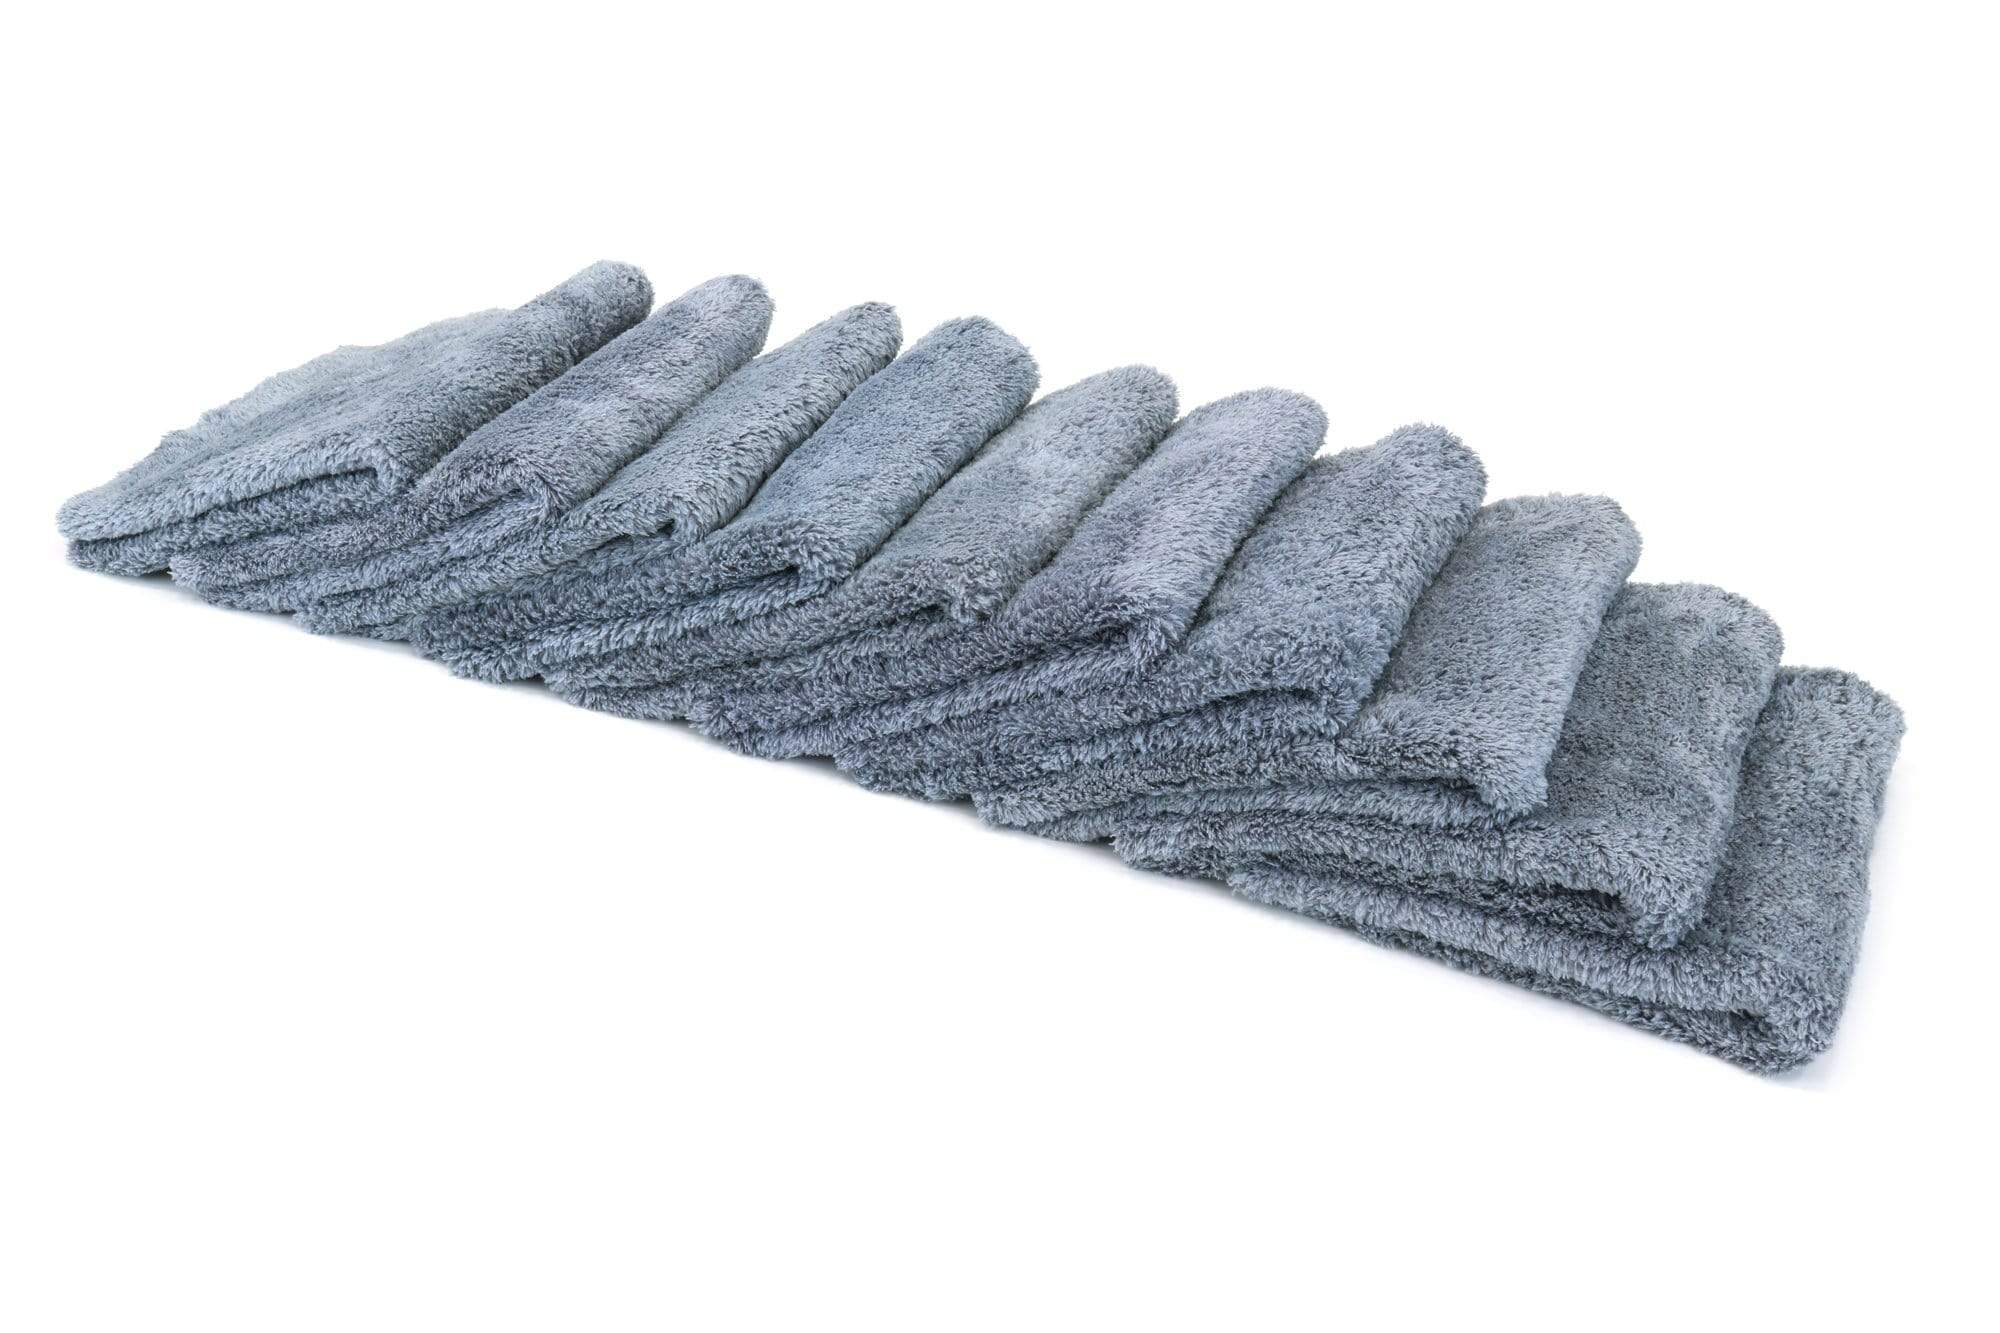 Autofiber Towel Gray [Korean Plush 470] Microfiber Detailing Towel (16 in. x 16 in., 470 gsm) 10 pack BULK BUNDLE